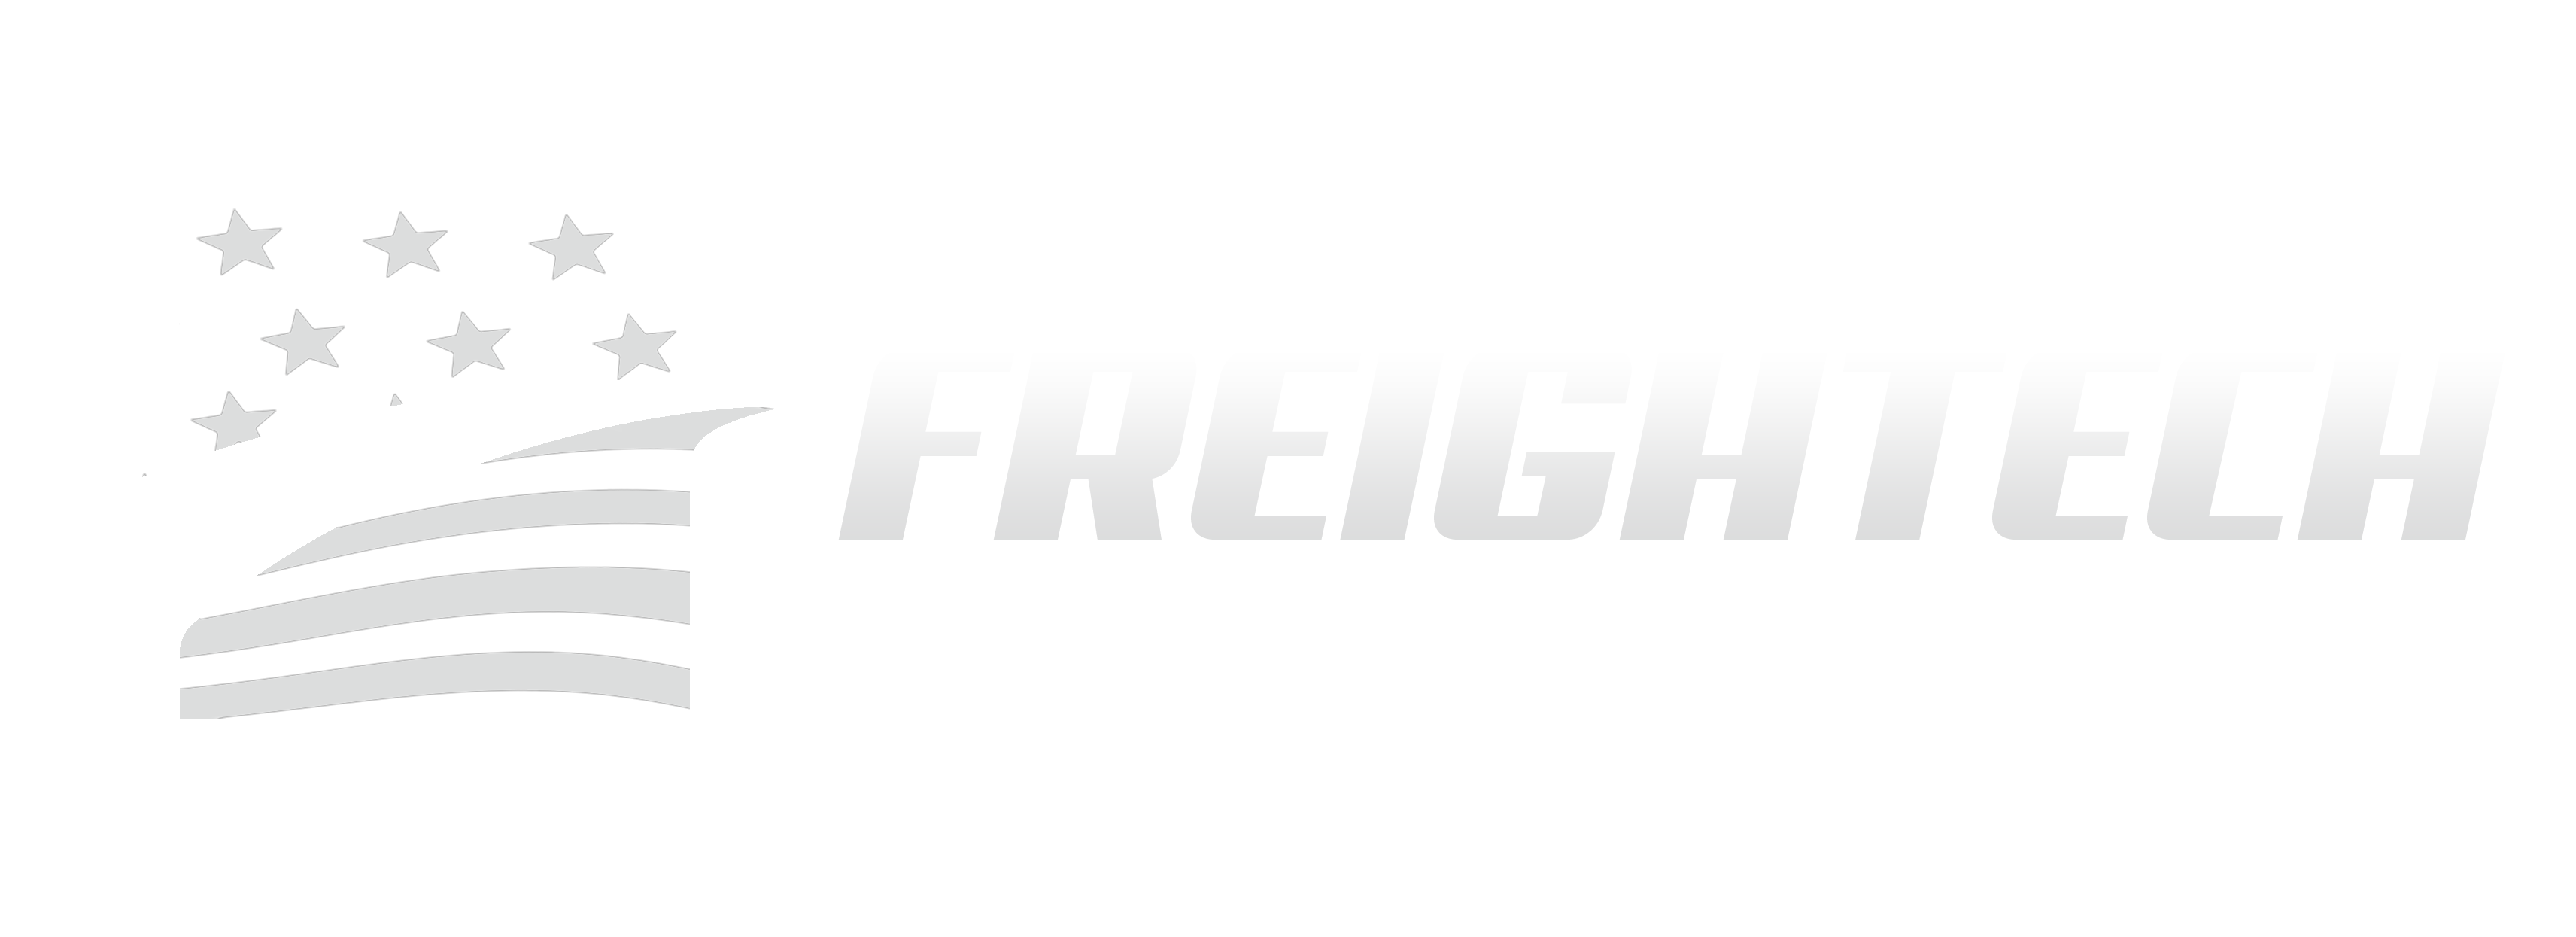 Freightech white logo